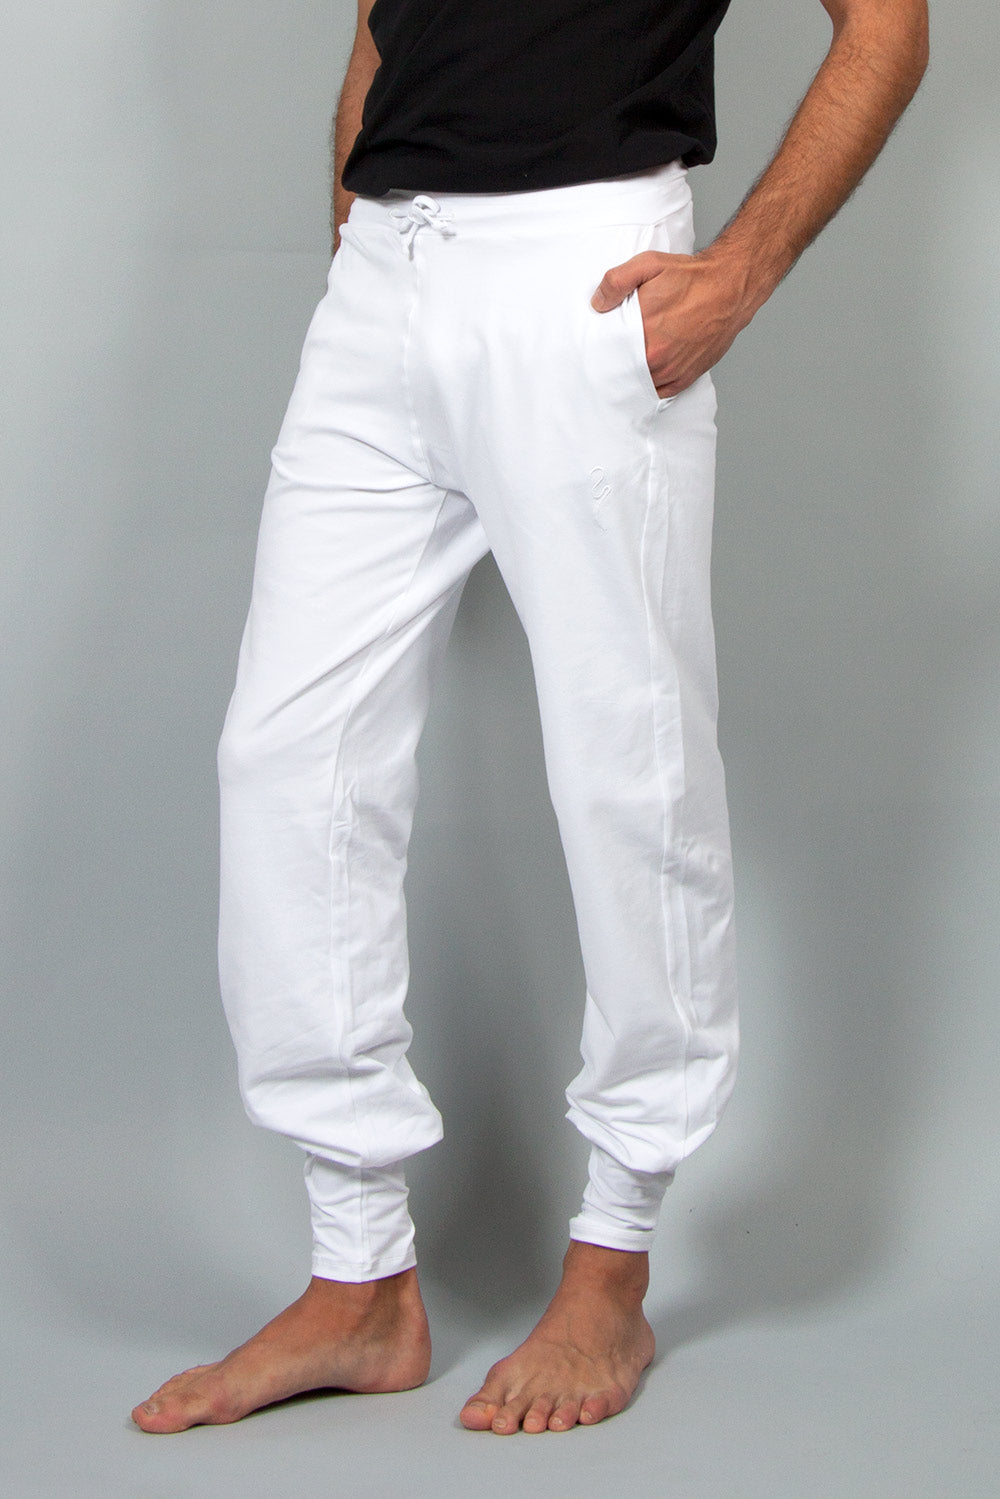 Pantalon Mahan blanc